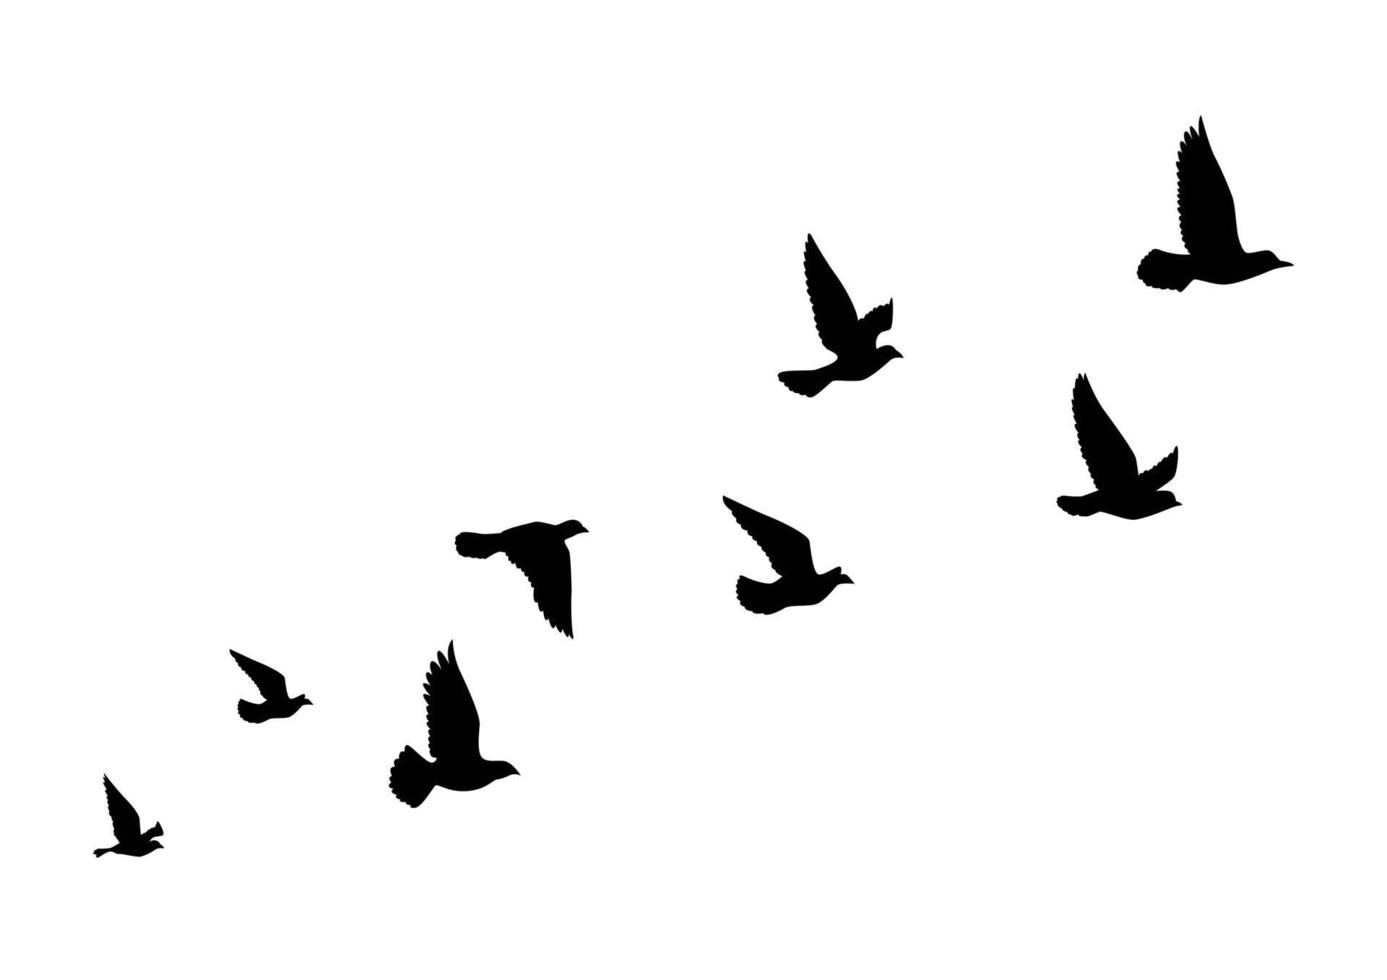 vliegende vogels silhouetten op witte achtergrond. vector illustratie. geïsoleerde vogel met het vliegen. tattoo ontwerp.